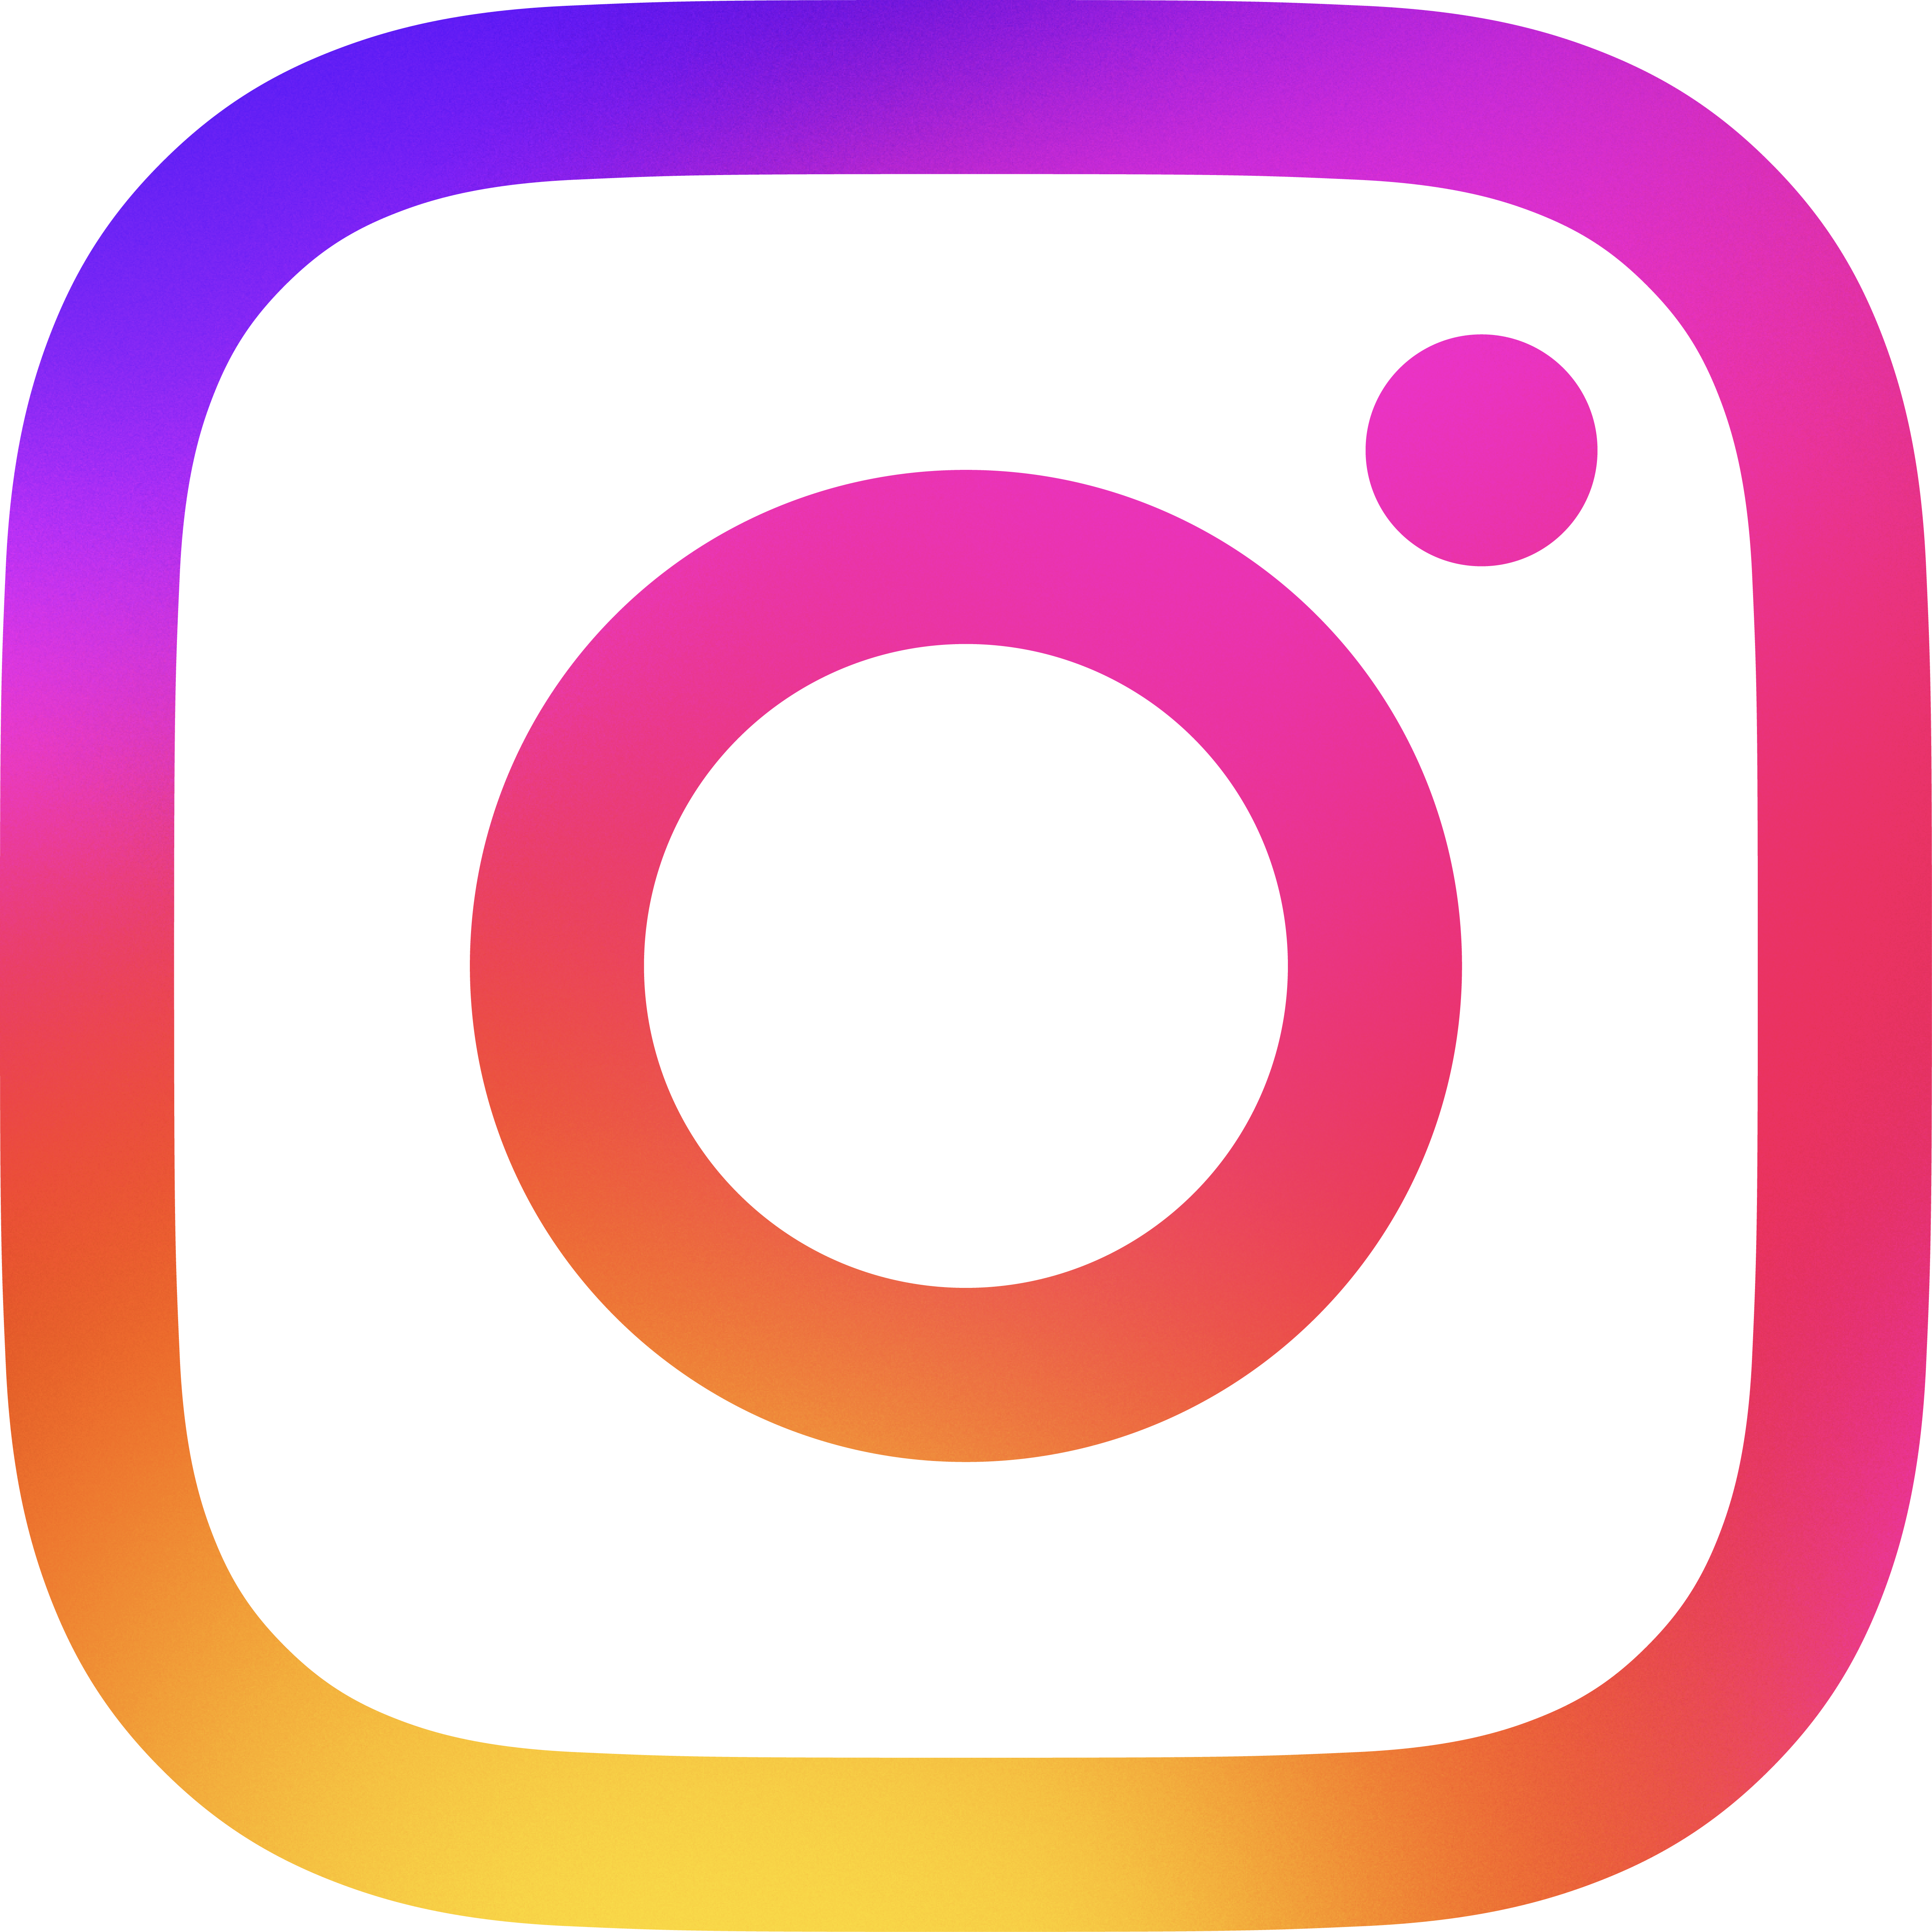 Follow on Instagram.